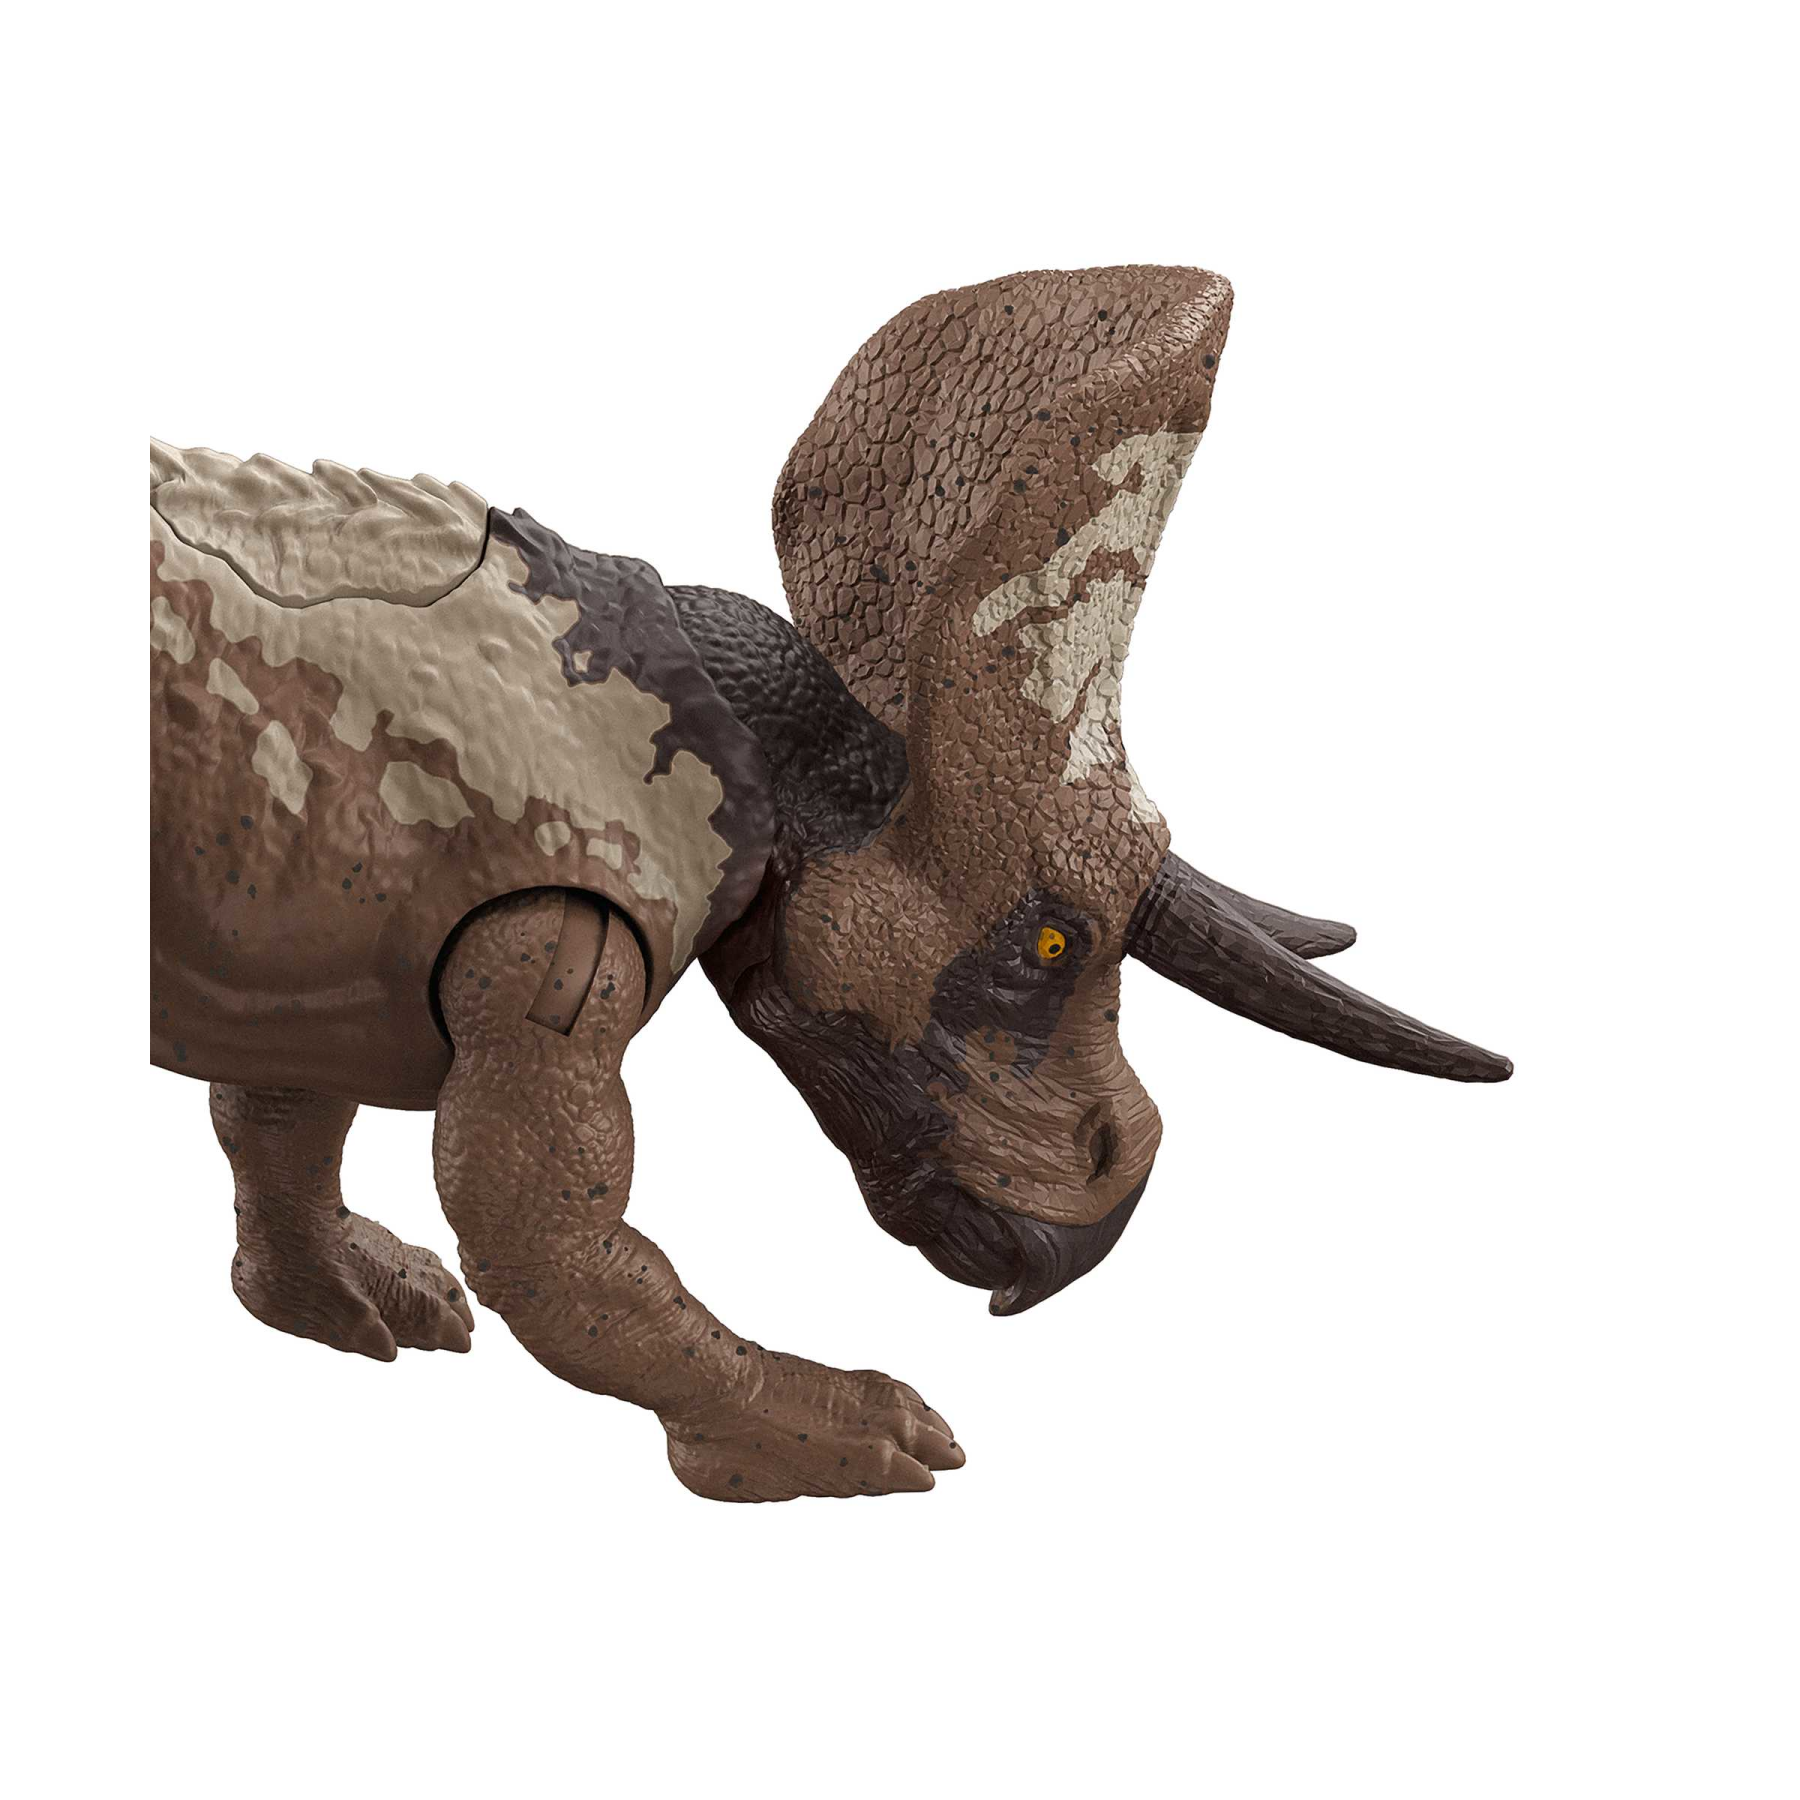 Jurassic world attacco fatale - zuniceratopo, dinosauro con articolazioni mobili e azione d'attacco specifica, giocattolo per bambini, 4+ anni, hln66 - Jurassic World